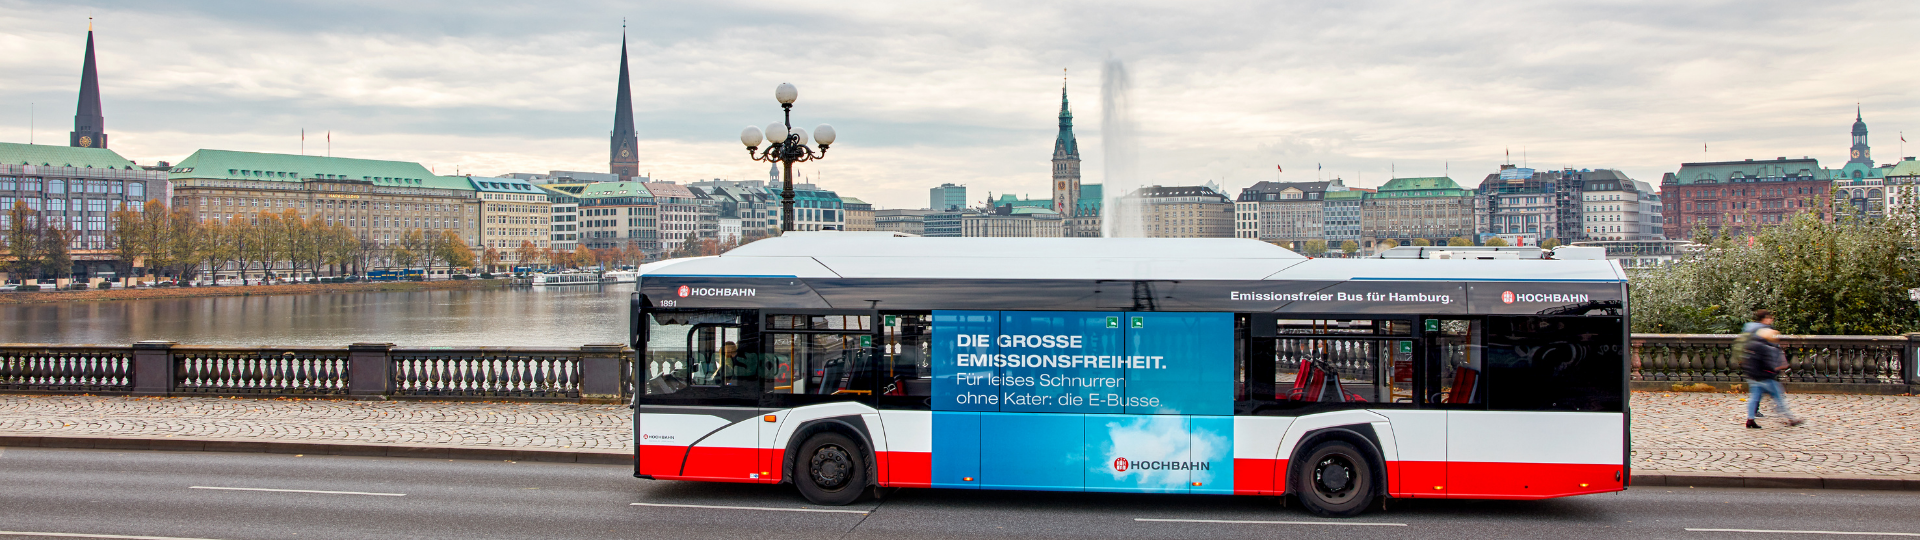 Solaris erhält den ersten Auftrag im Rahmen der Ausschreibung für 530 E-Busse für Hamburg